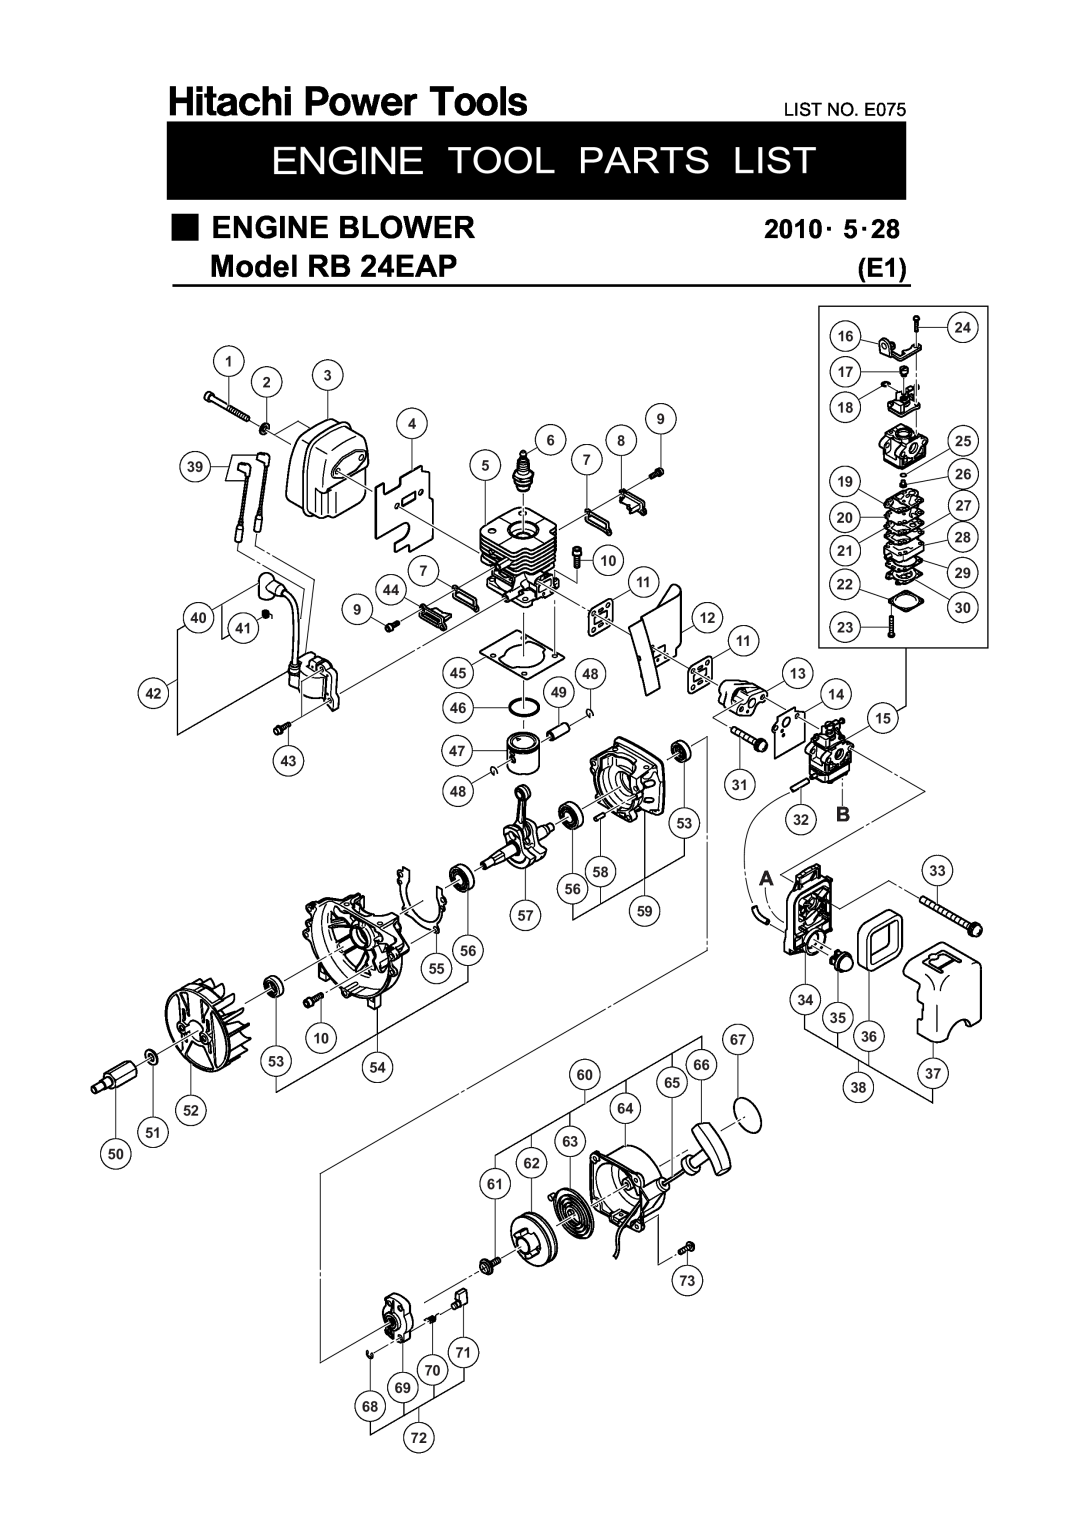 Hitachi manual Engine, ENGINE BLOWER Model RB 24EAP, 2010㨯 5㨯28 E1, LIST NO. E075 